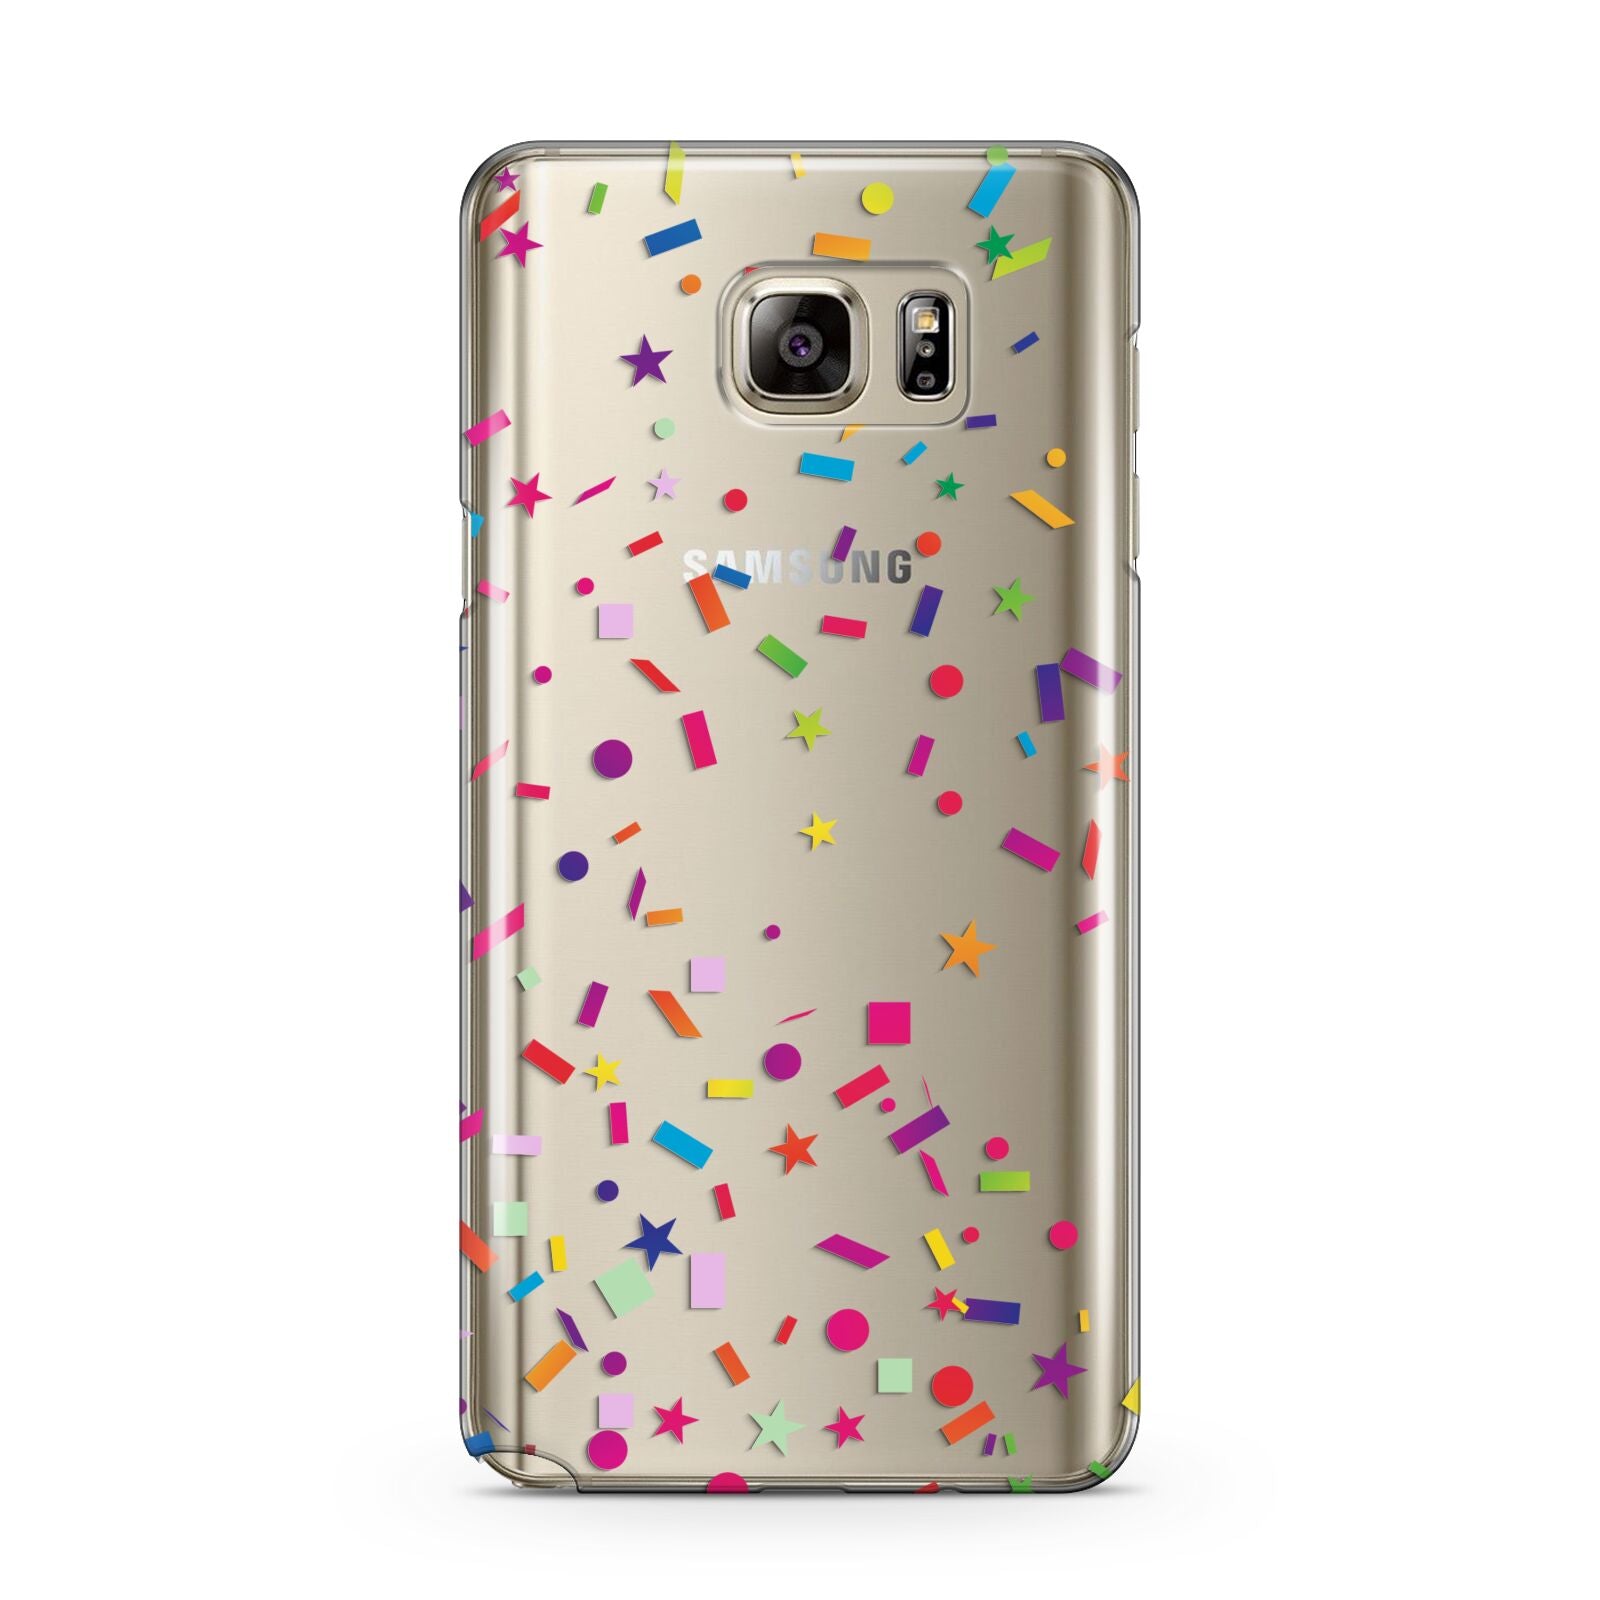 Confetti Samsung Galaxy Note 5 Case